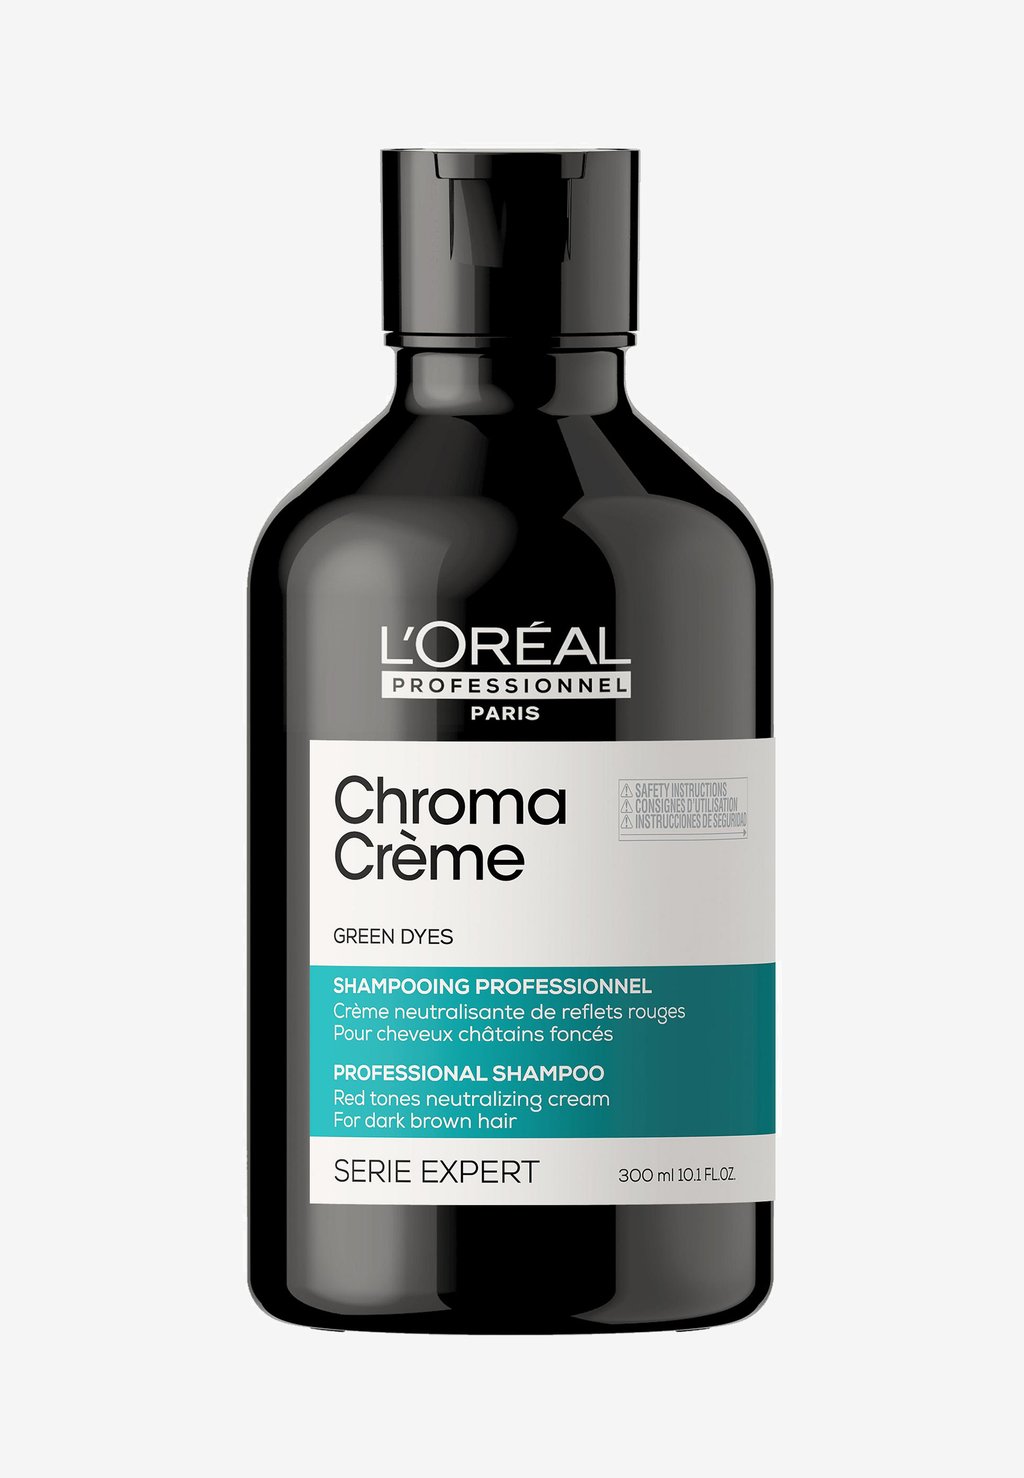 цена Шампунь Expert Series Chroma Crème Shampoo L'OREAL PROFESSIONNEL, зеленый